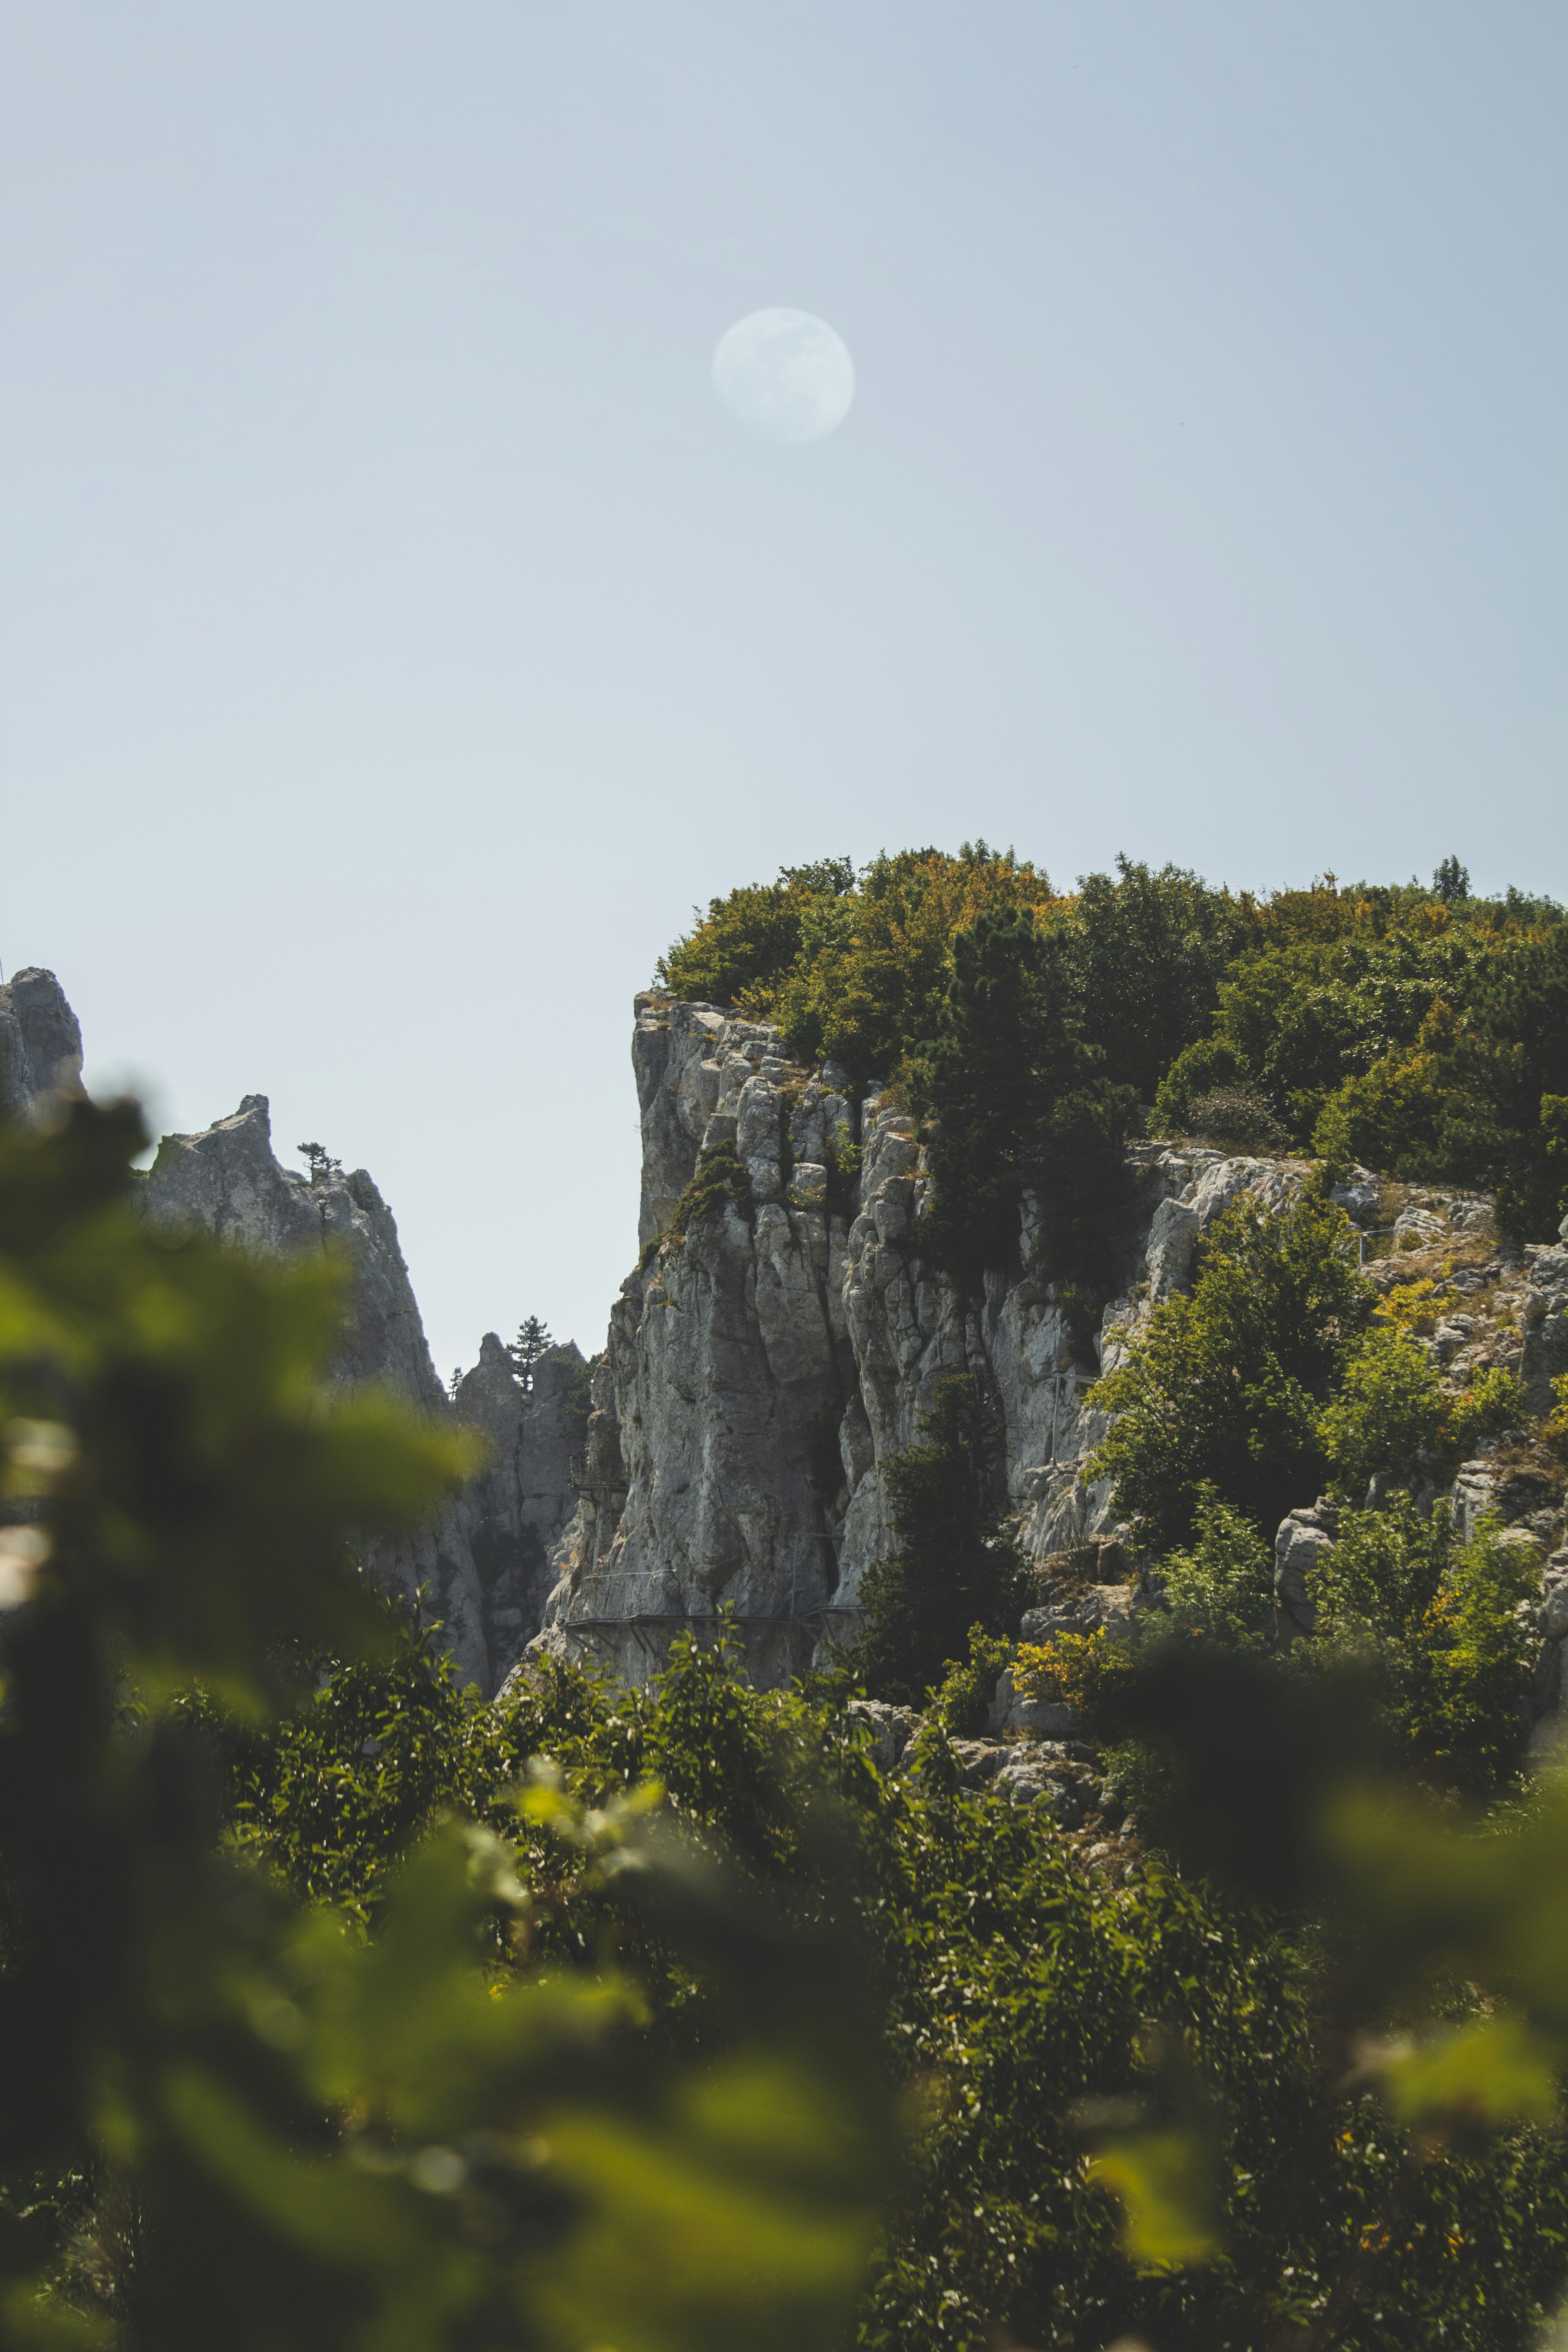 View of Ai Petri Mountain, located in Crimea near Yalta